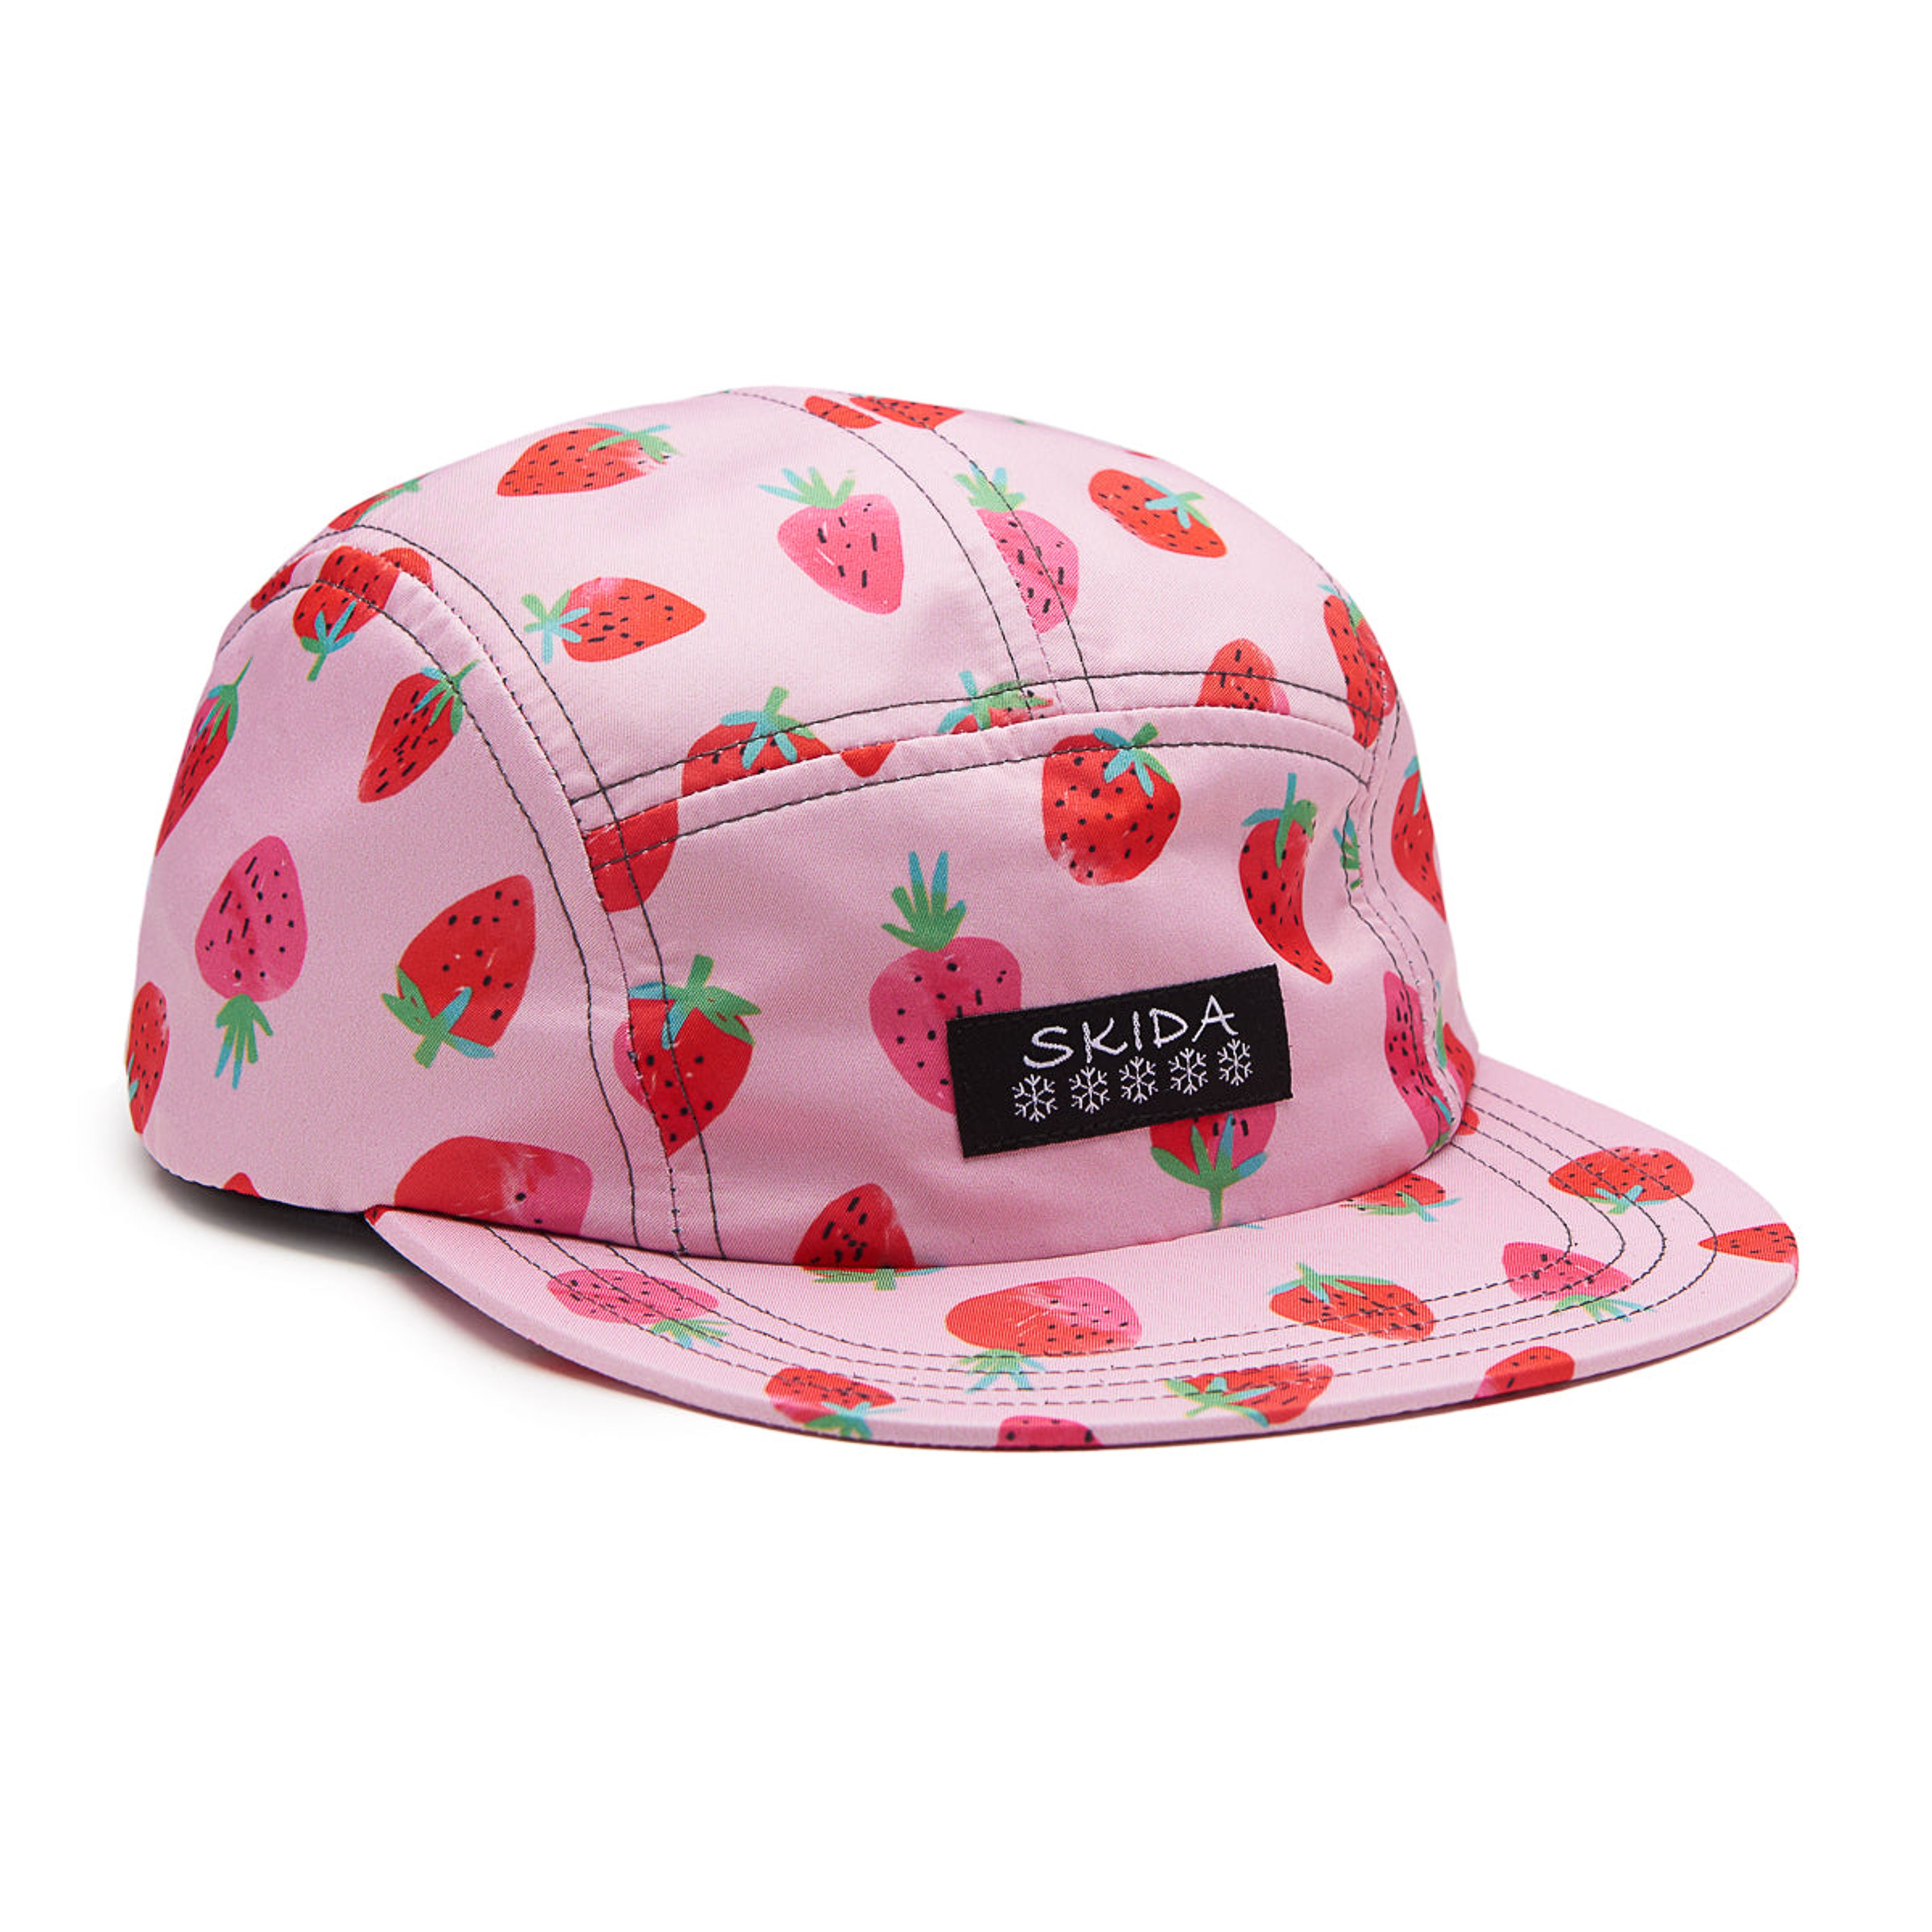 www.skida.com/products/brim-hat-strawberry-fields